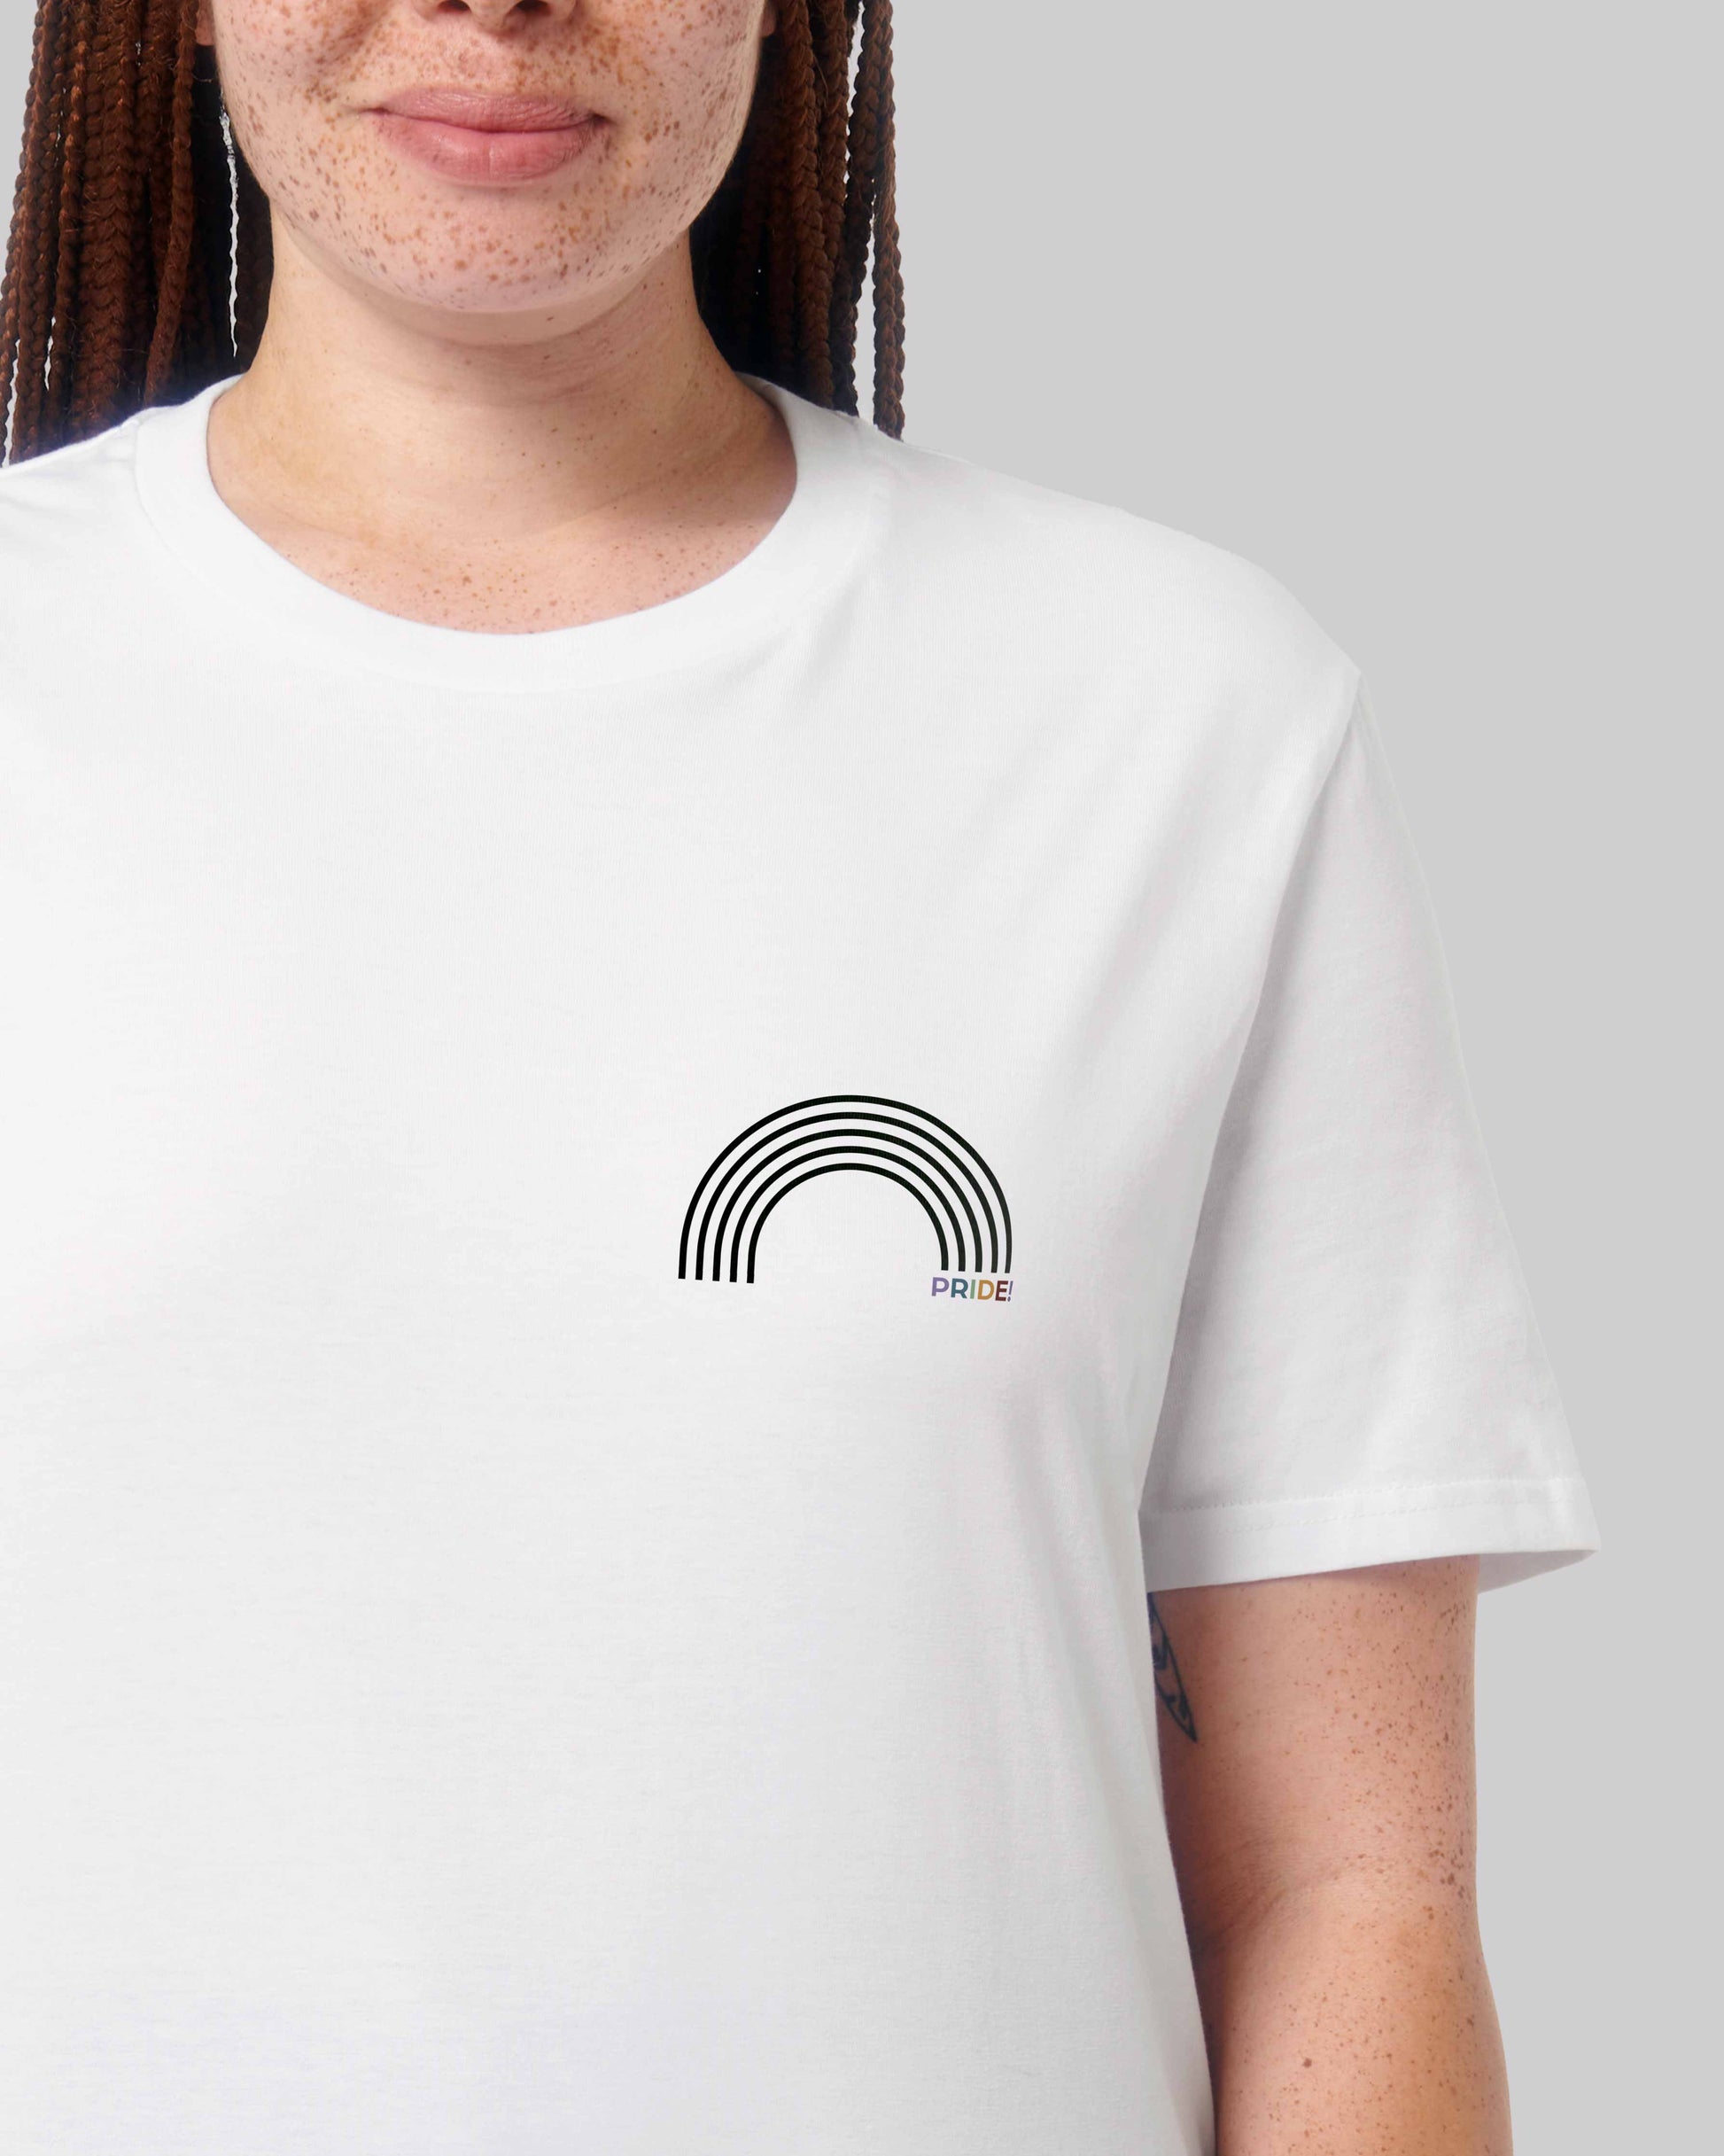 EINHORST® unisex Organic Shirt in Weiß mit dem Motiv "pride Regenbogen" in der Kombination schwarzer Regenbogen mit bunter Schrift, Bild von weiblicher Person mit Shirt